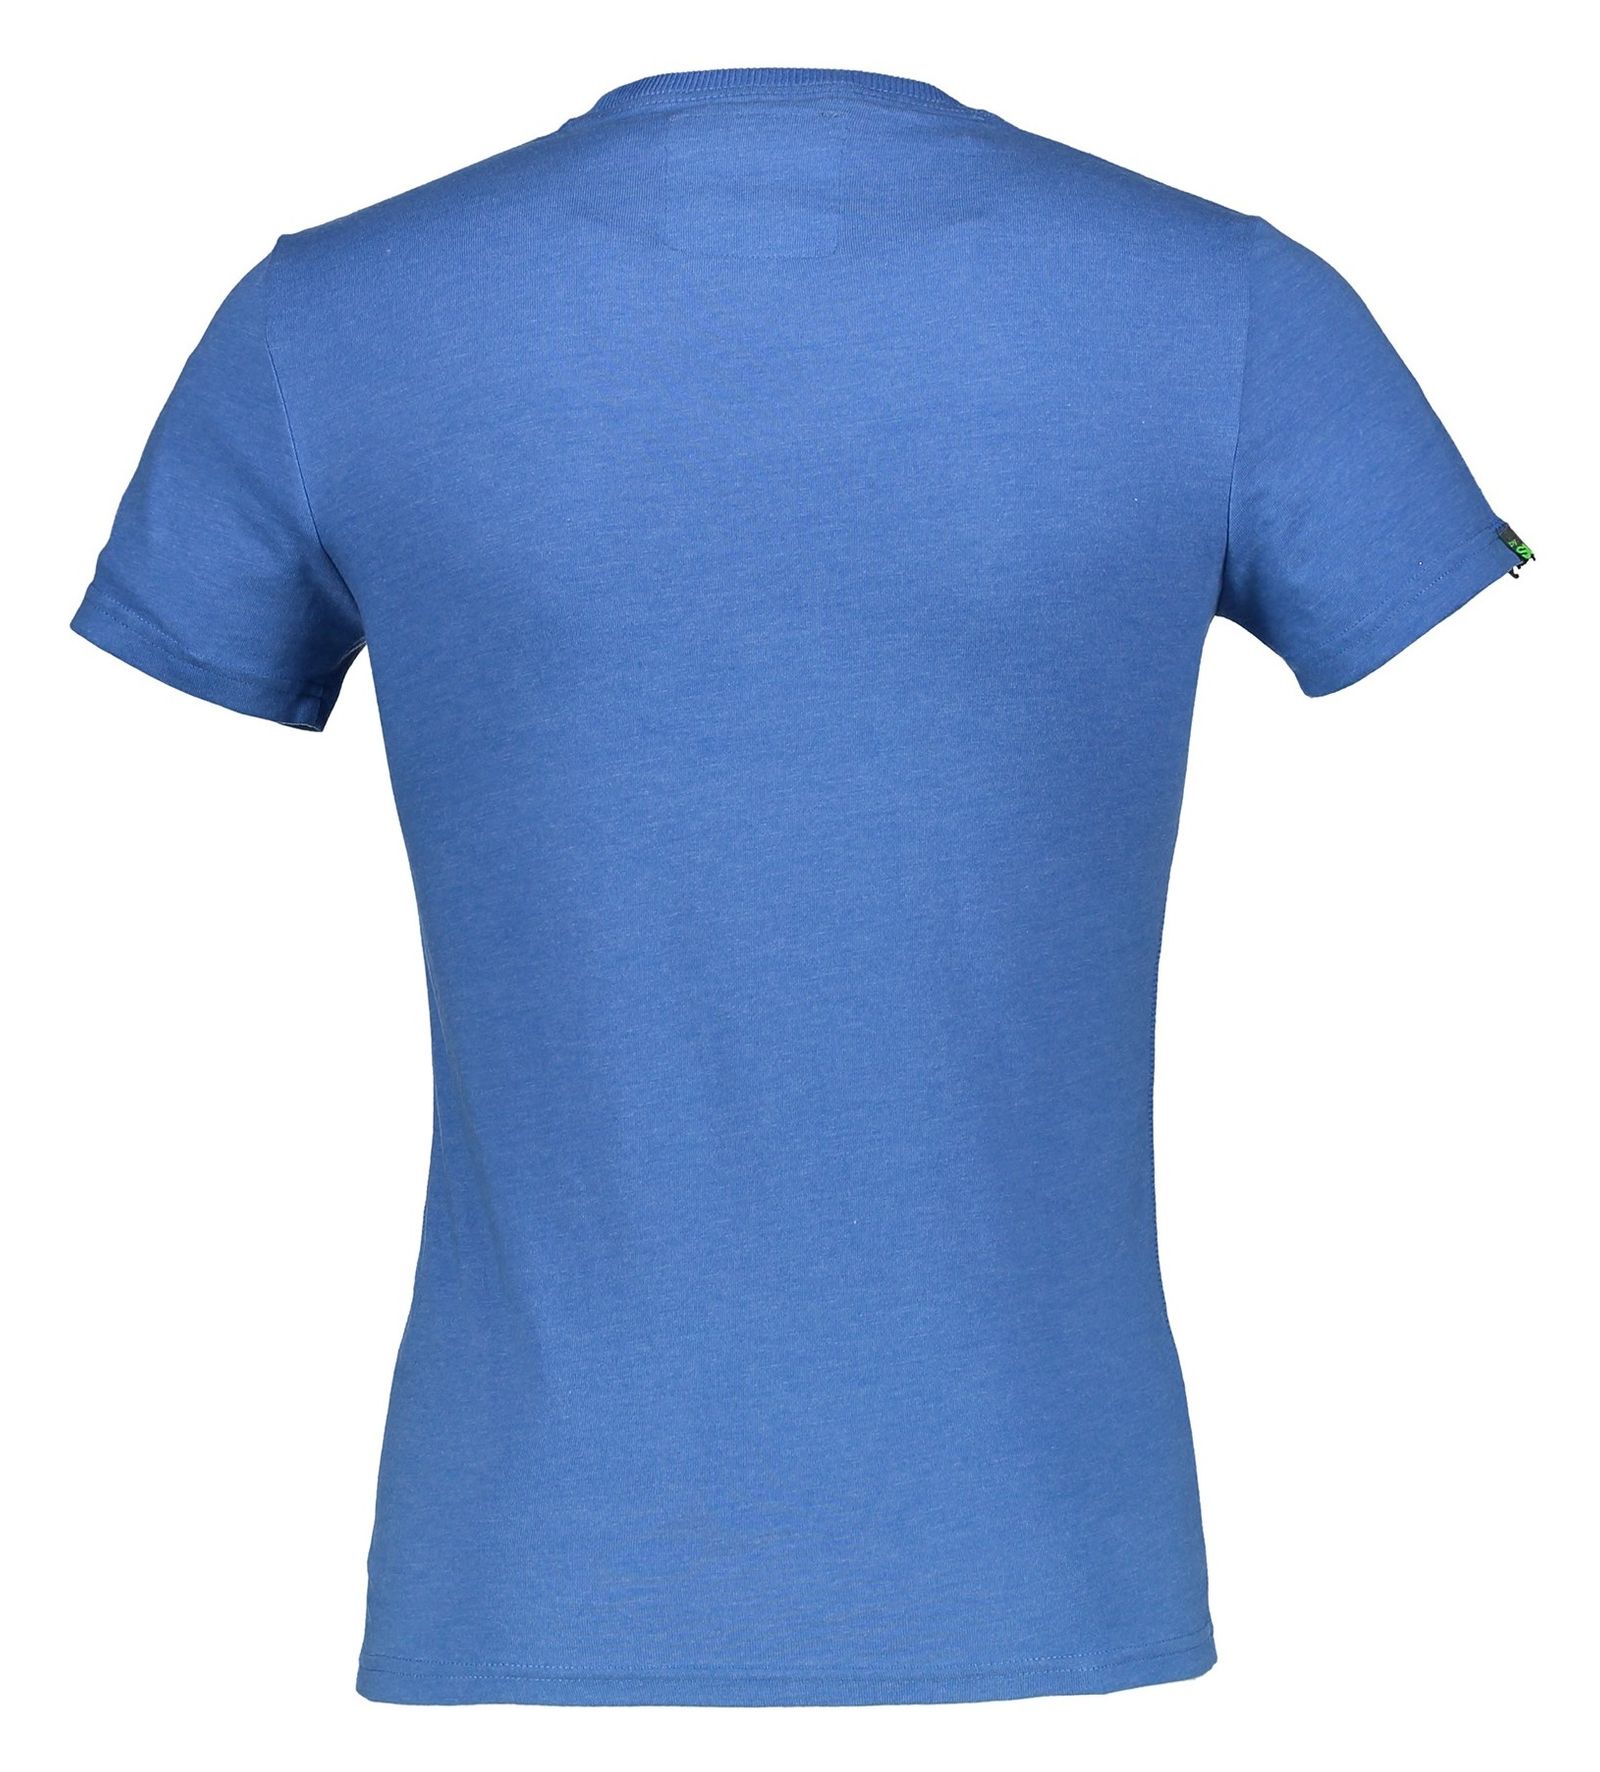 تی شرت یقه گرد مردانه - سوپردرای - آبي سلطنتي - 3